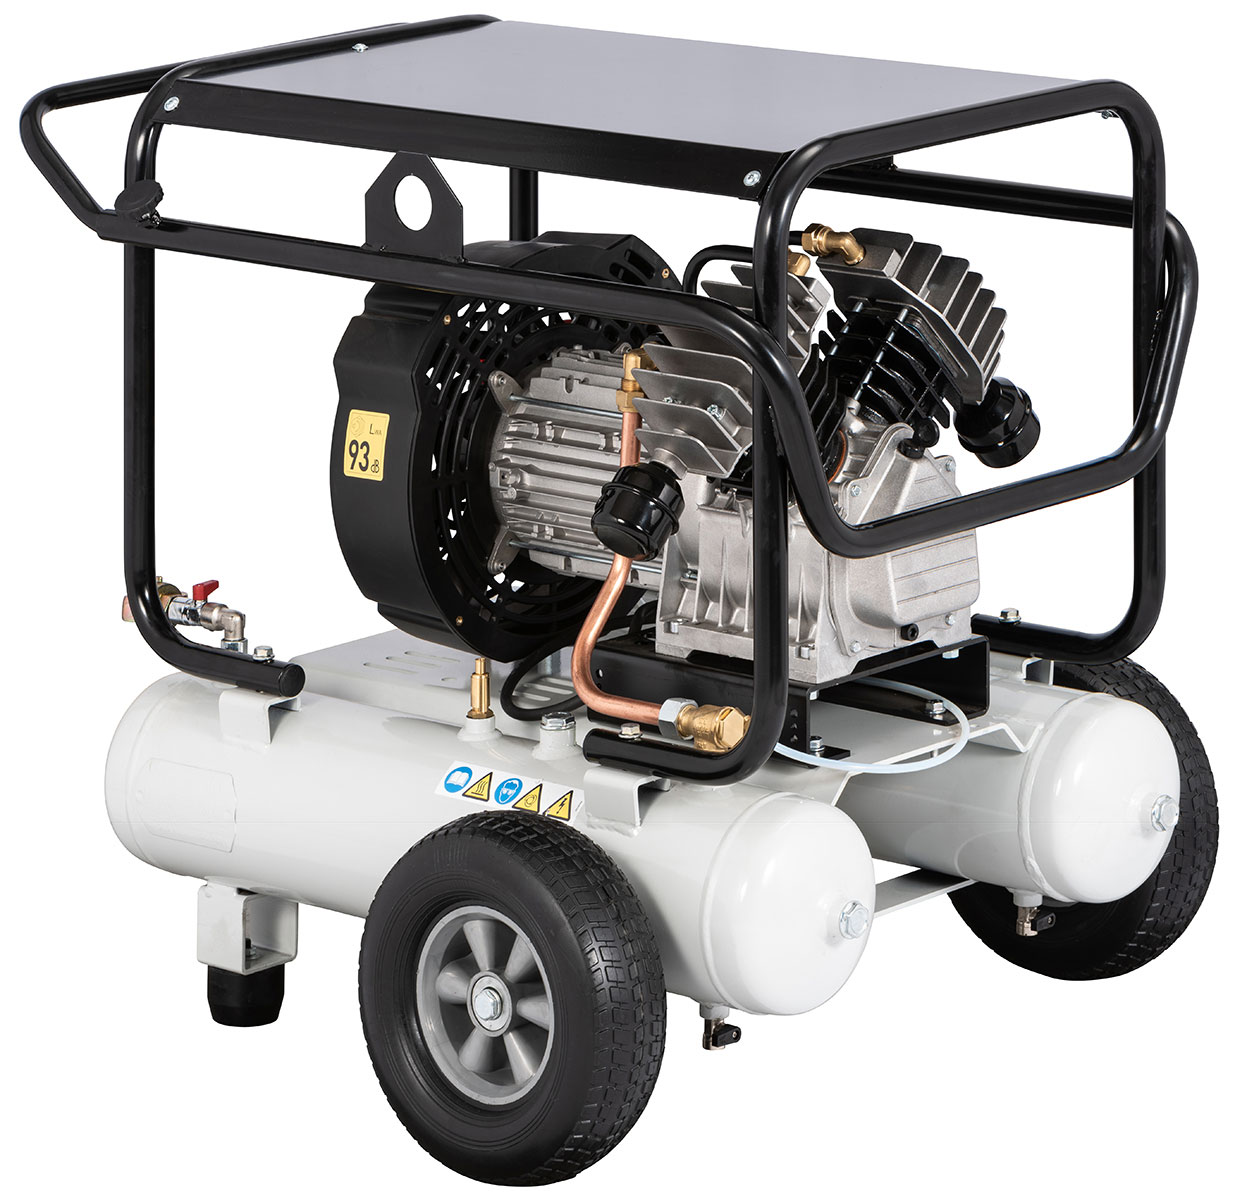 RENNER REKO 350W/22 mobiler Kolbenkompressor für Abwassertechnik,  2,2 kW, bis 10 bar, 2x11 Liter, mit Druckminderer